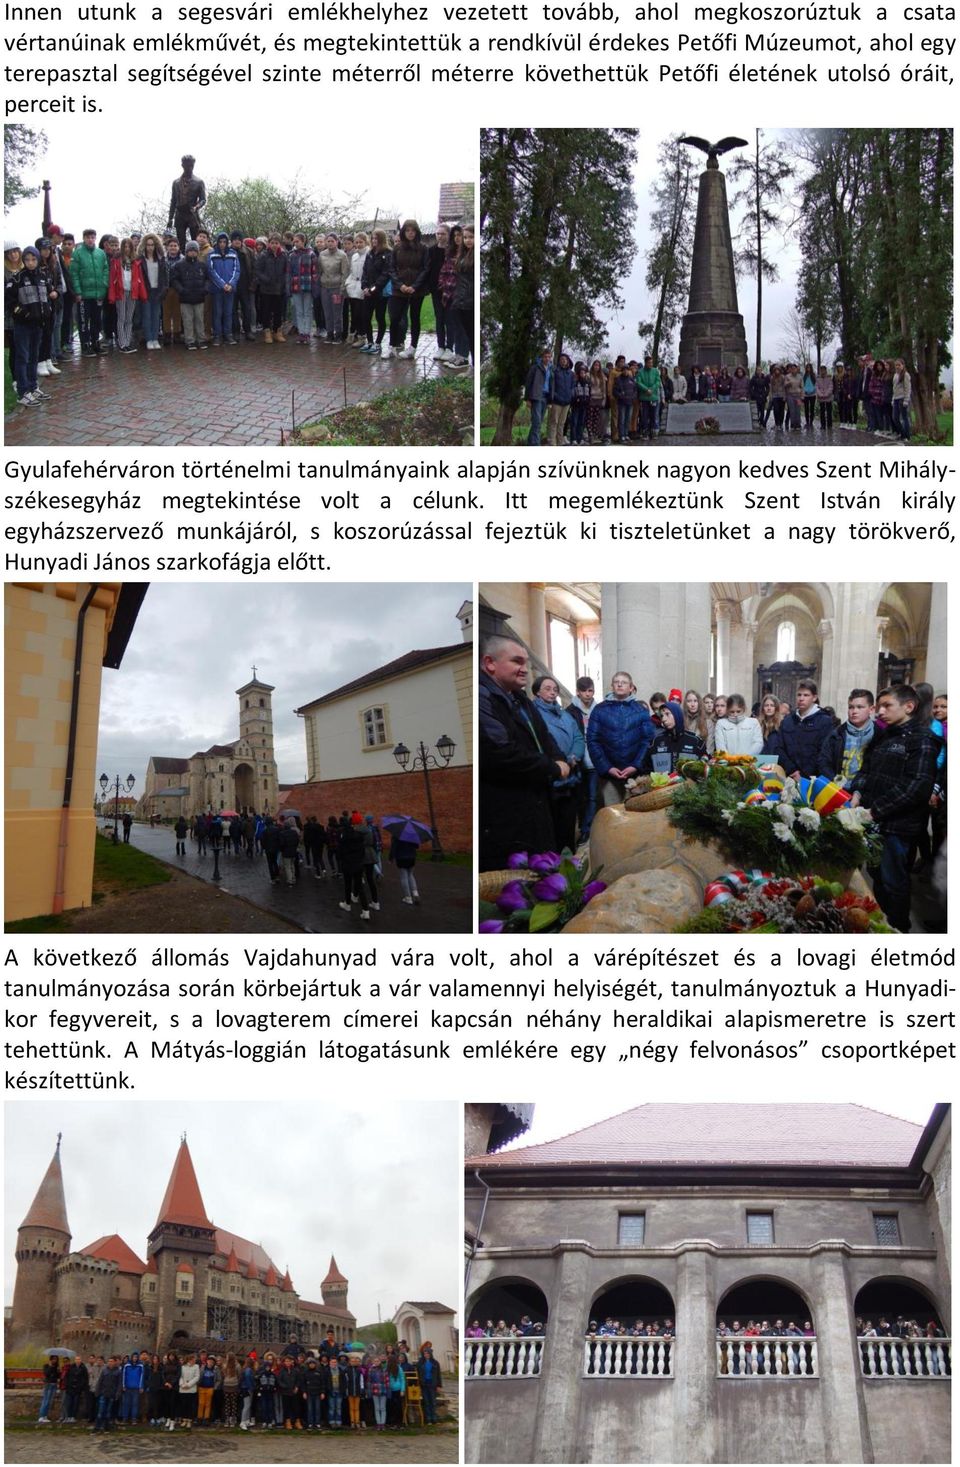 Gyulafehérváron történelmi tanulmányaink alapján szívünknek nagyon kedves Szent Mihályszékesegyház megtekintése volt a célunk.